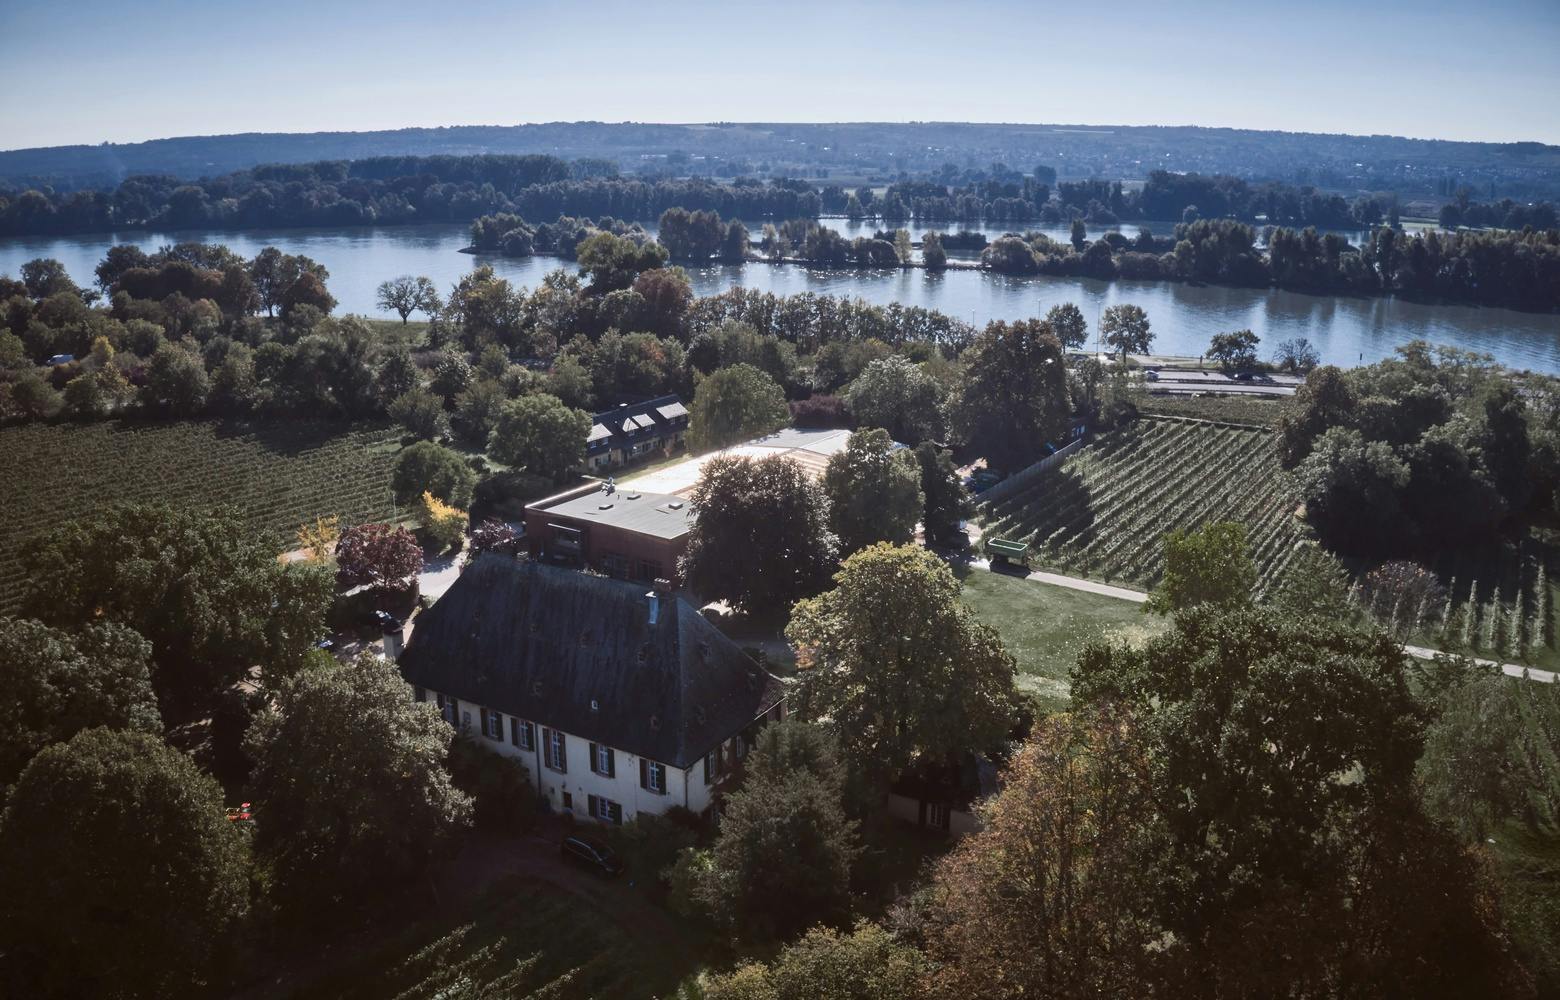 Idyllic winery in the Rheingau area